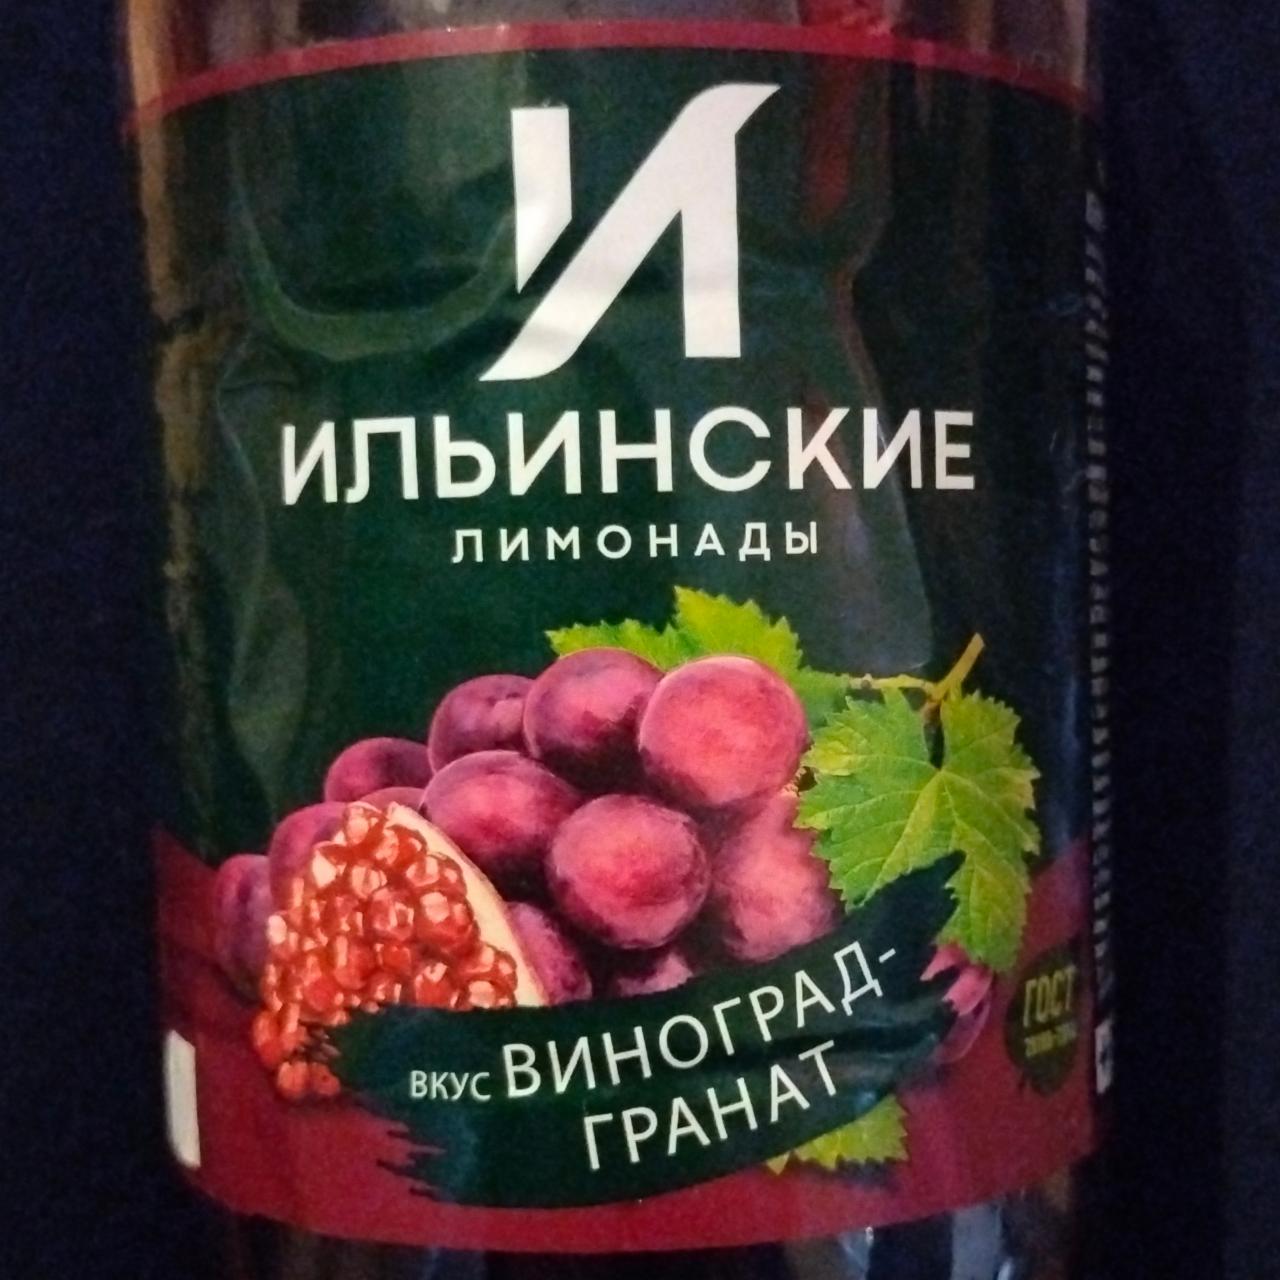 Фото - Напиток сильногазированный вкус Виноград-Гранат Ильинские Лимонады